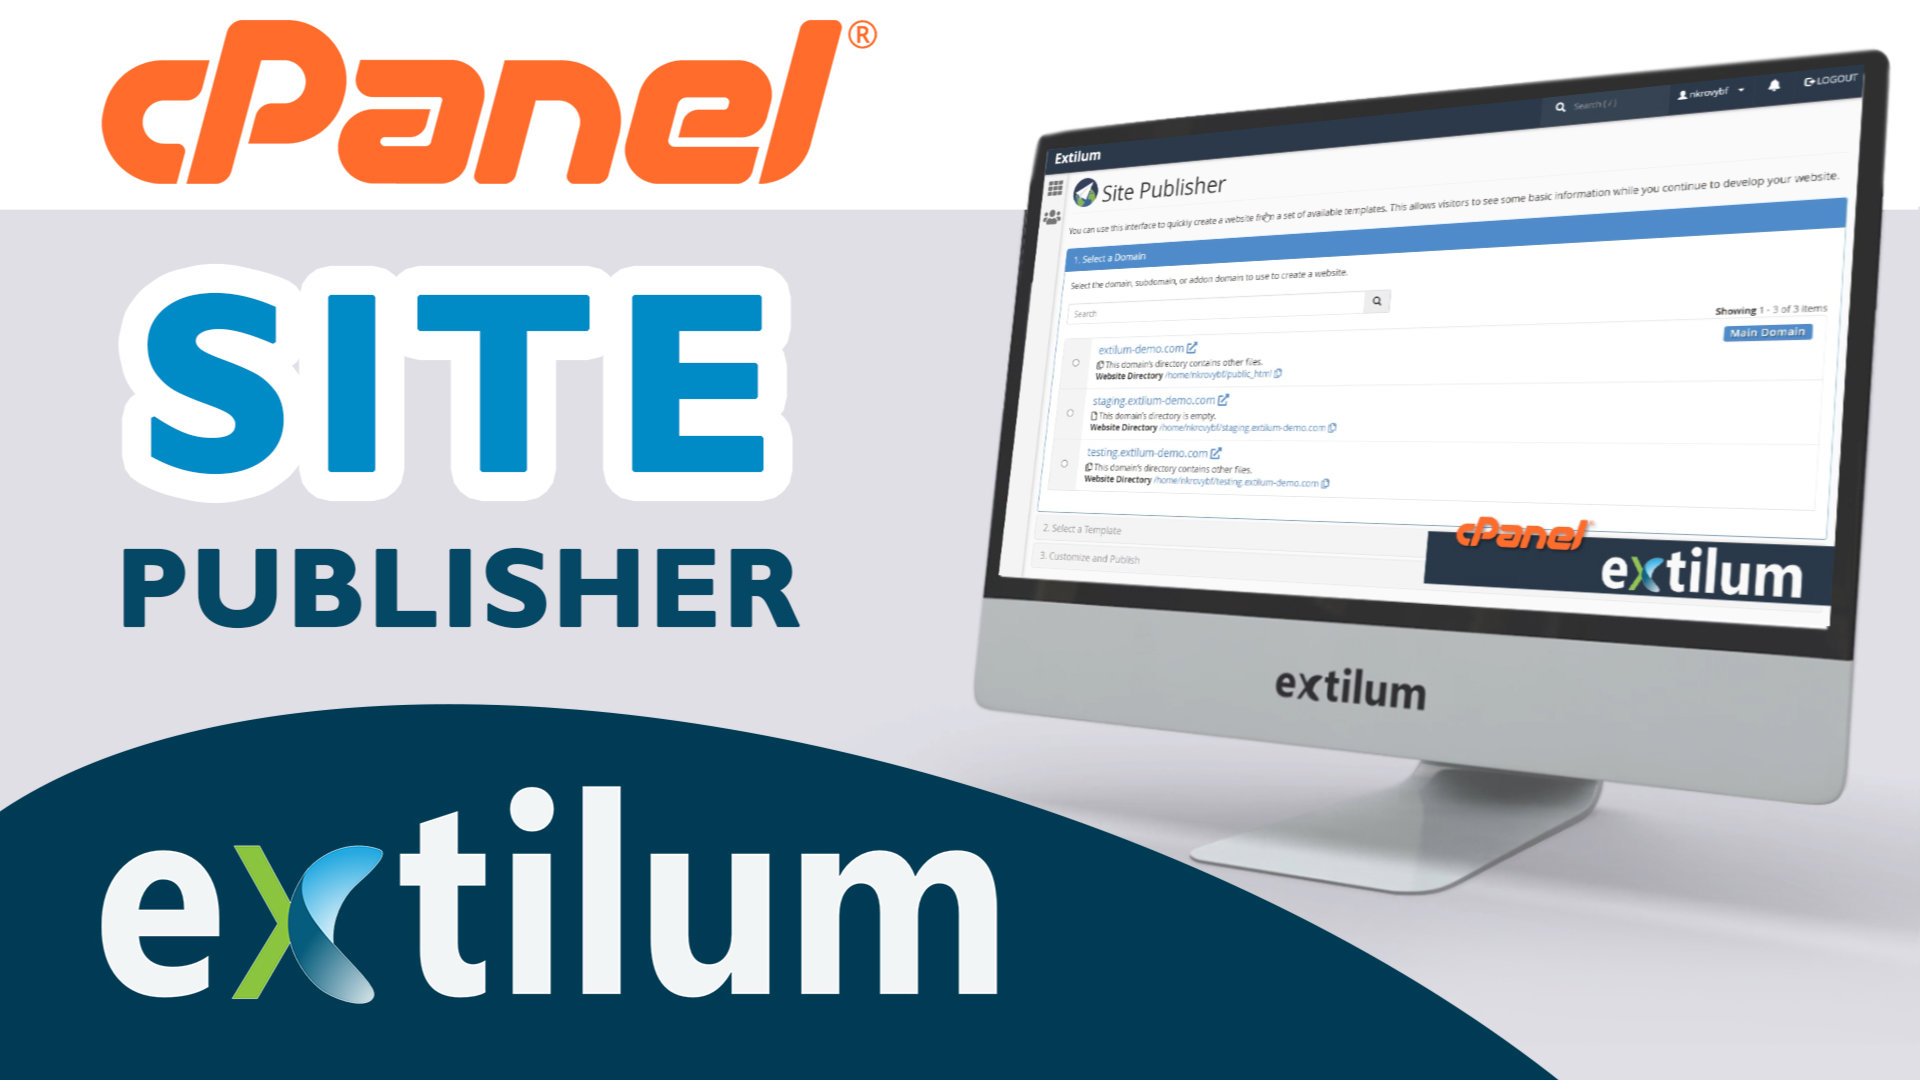 Extilum cpanel - site publisher